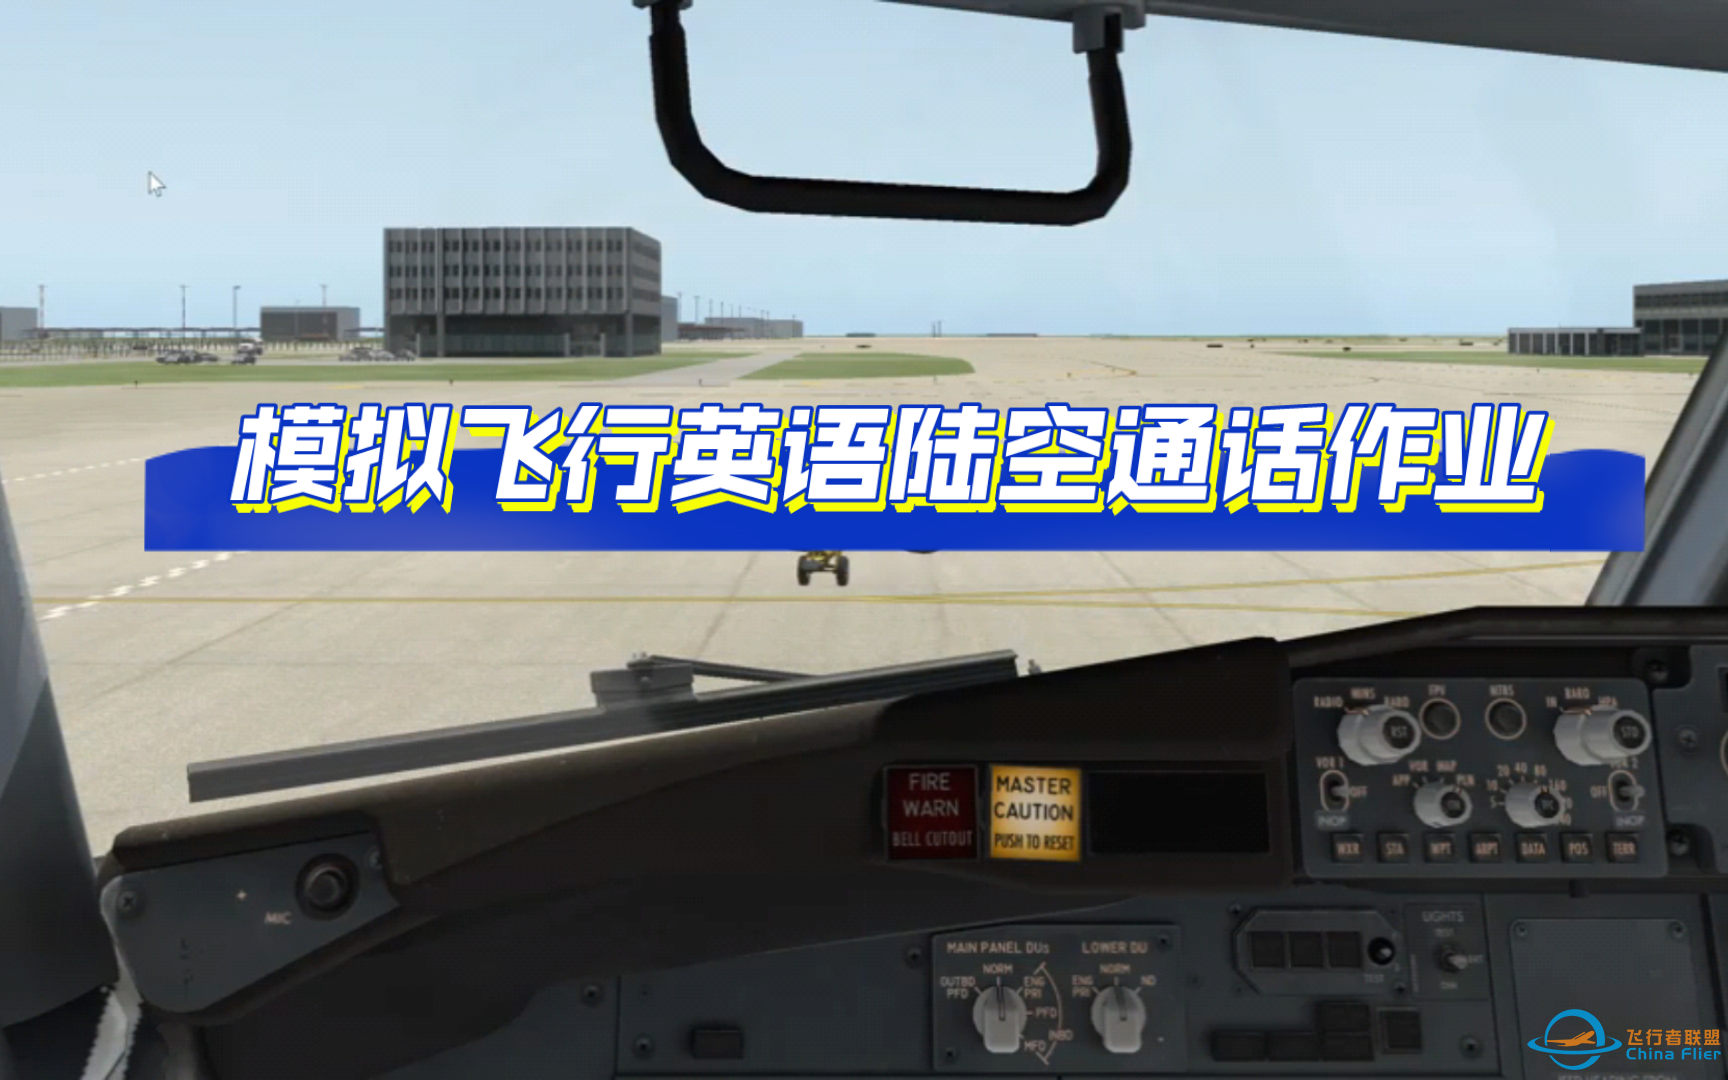 【飞行模拟英语陆空通话作业】Xplane飞行模拟陆空通话：ATIS-Line up-2872 